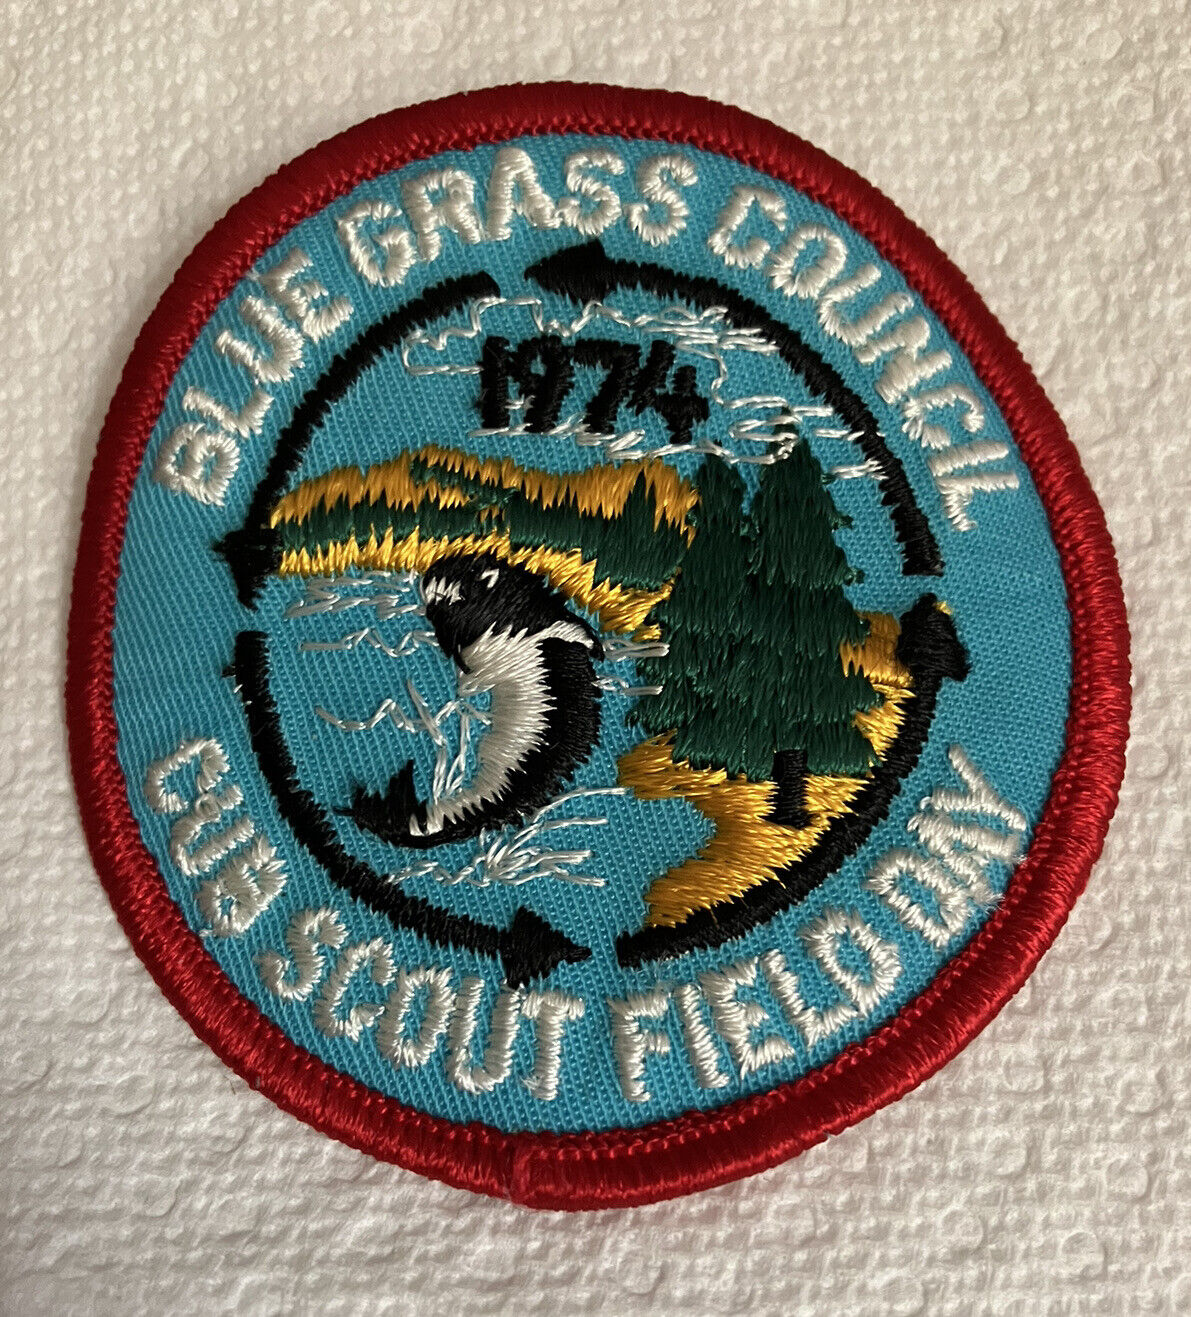 1974 Bluegrass Council Cub Scout Field Day Boy Scout Patch BSA Vintage